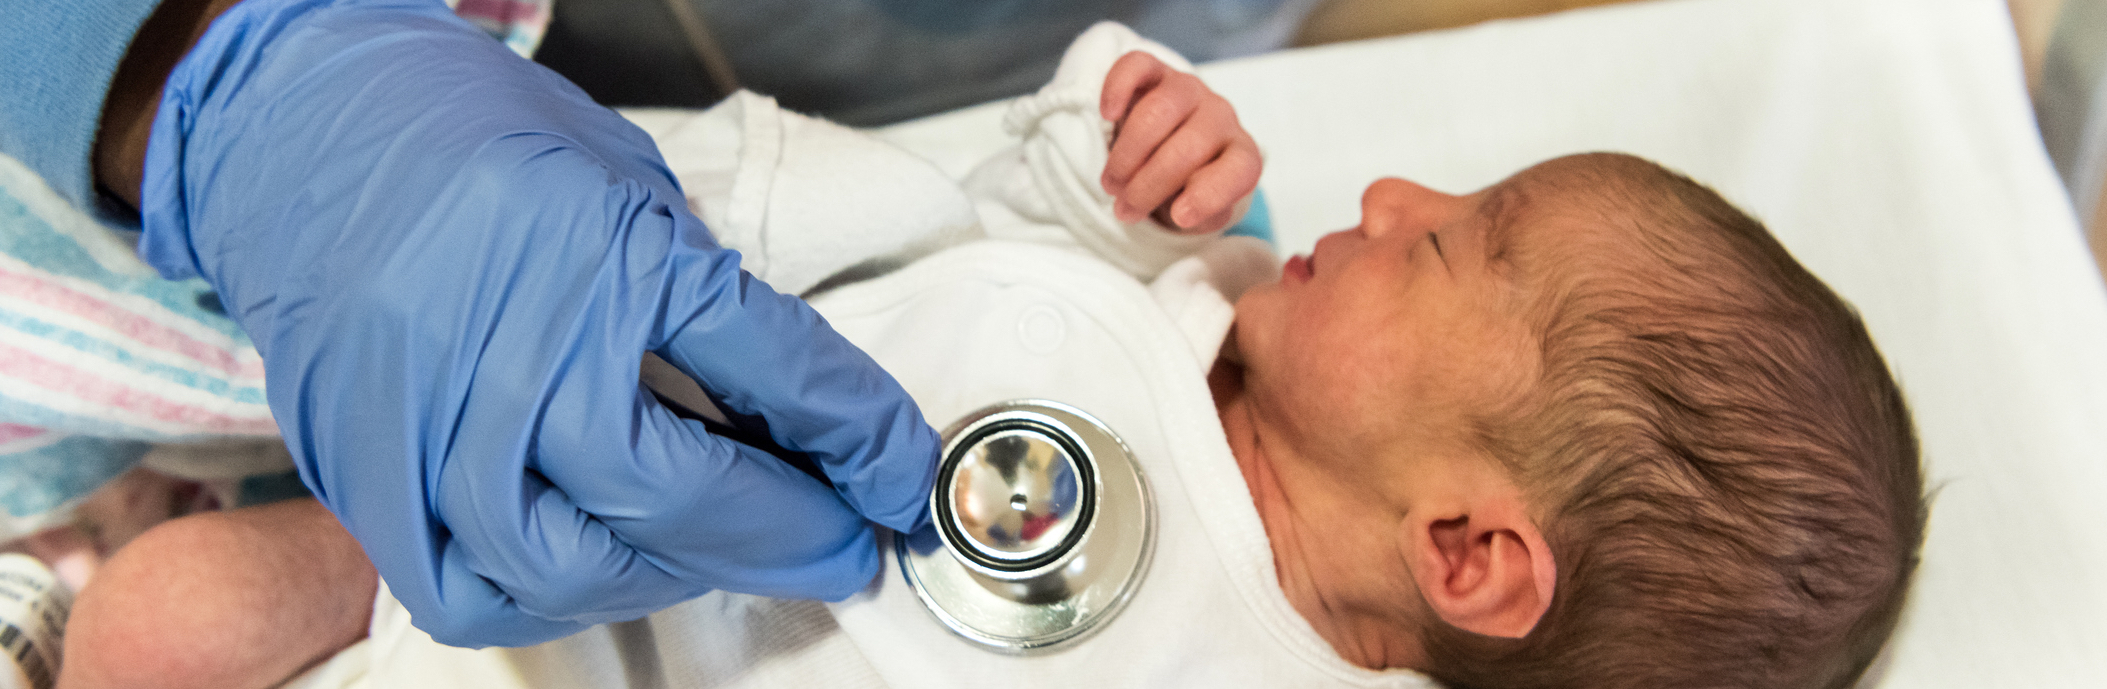 Newborn baby and stethoscope